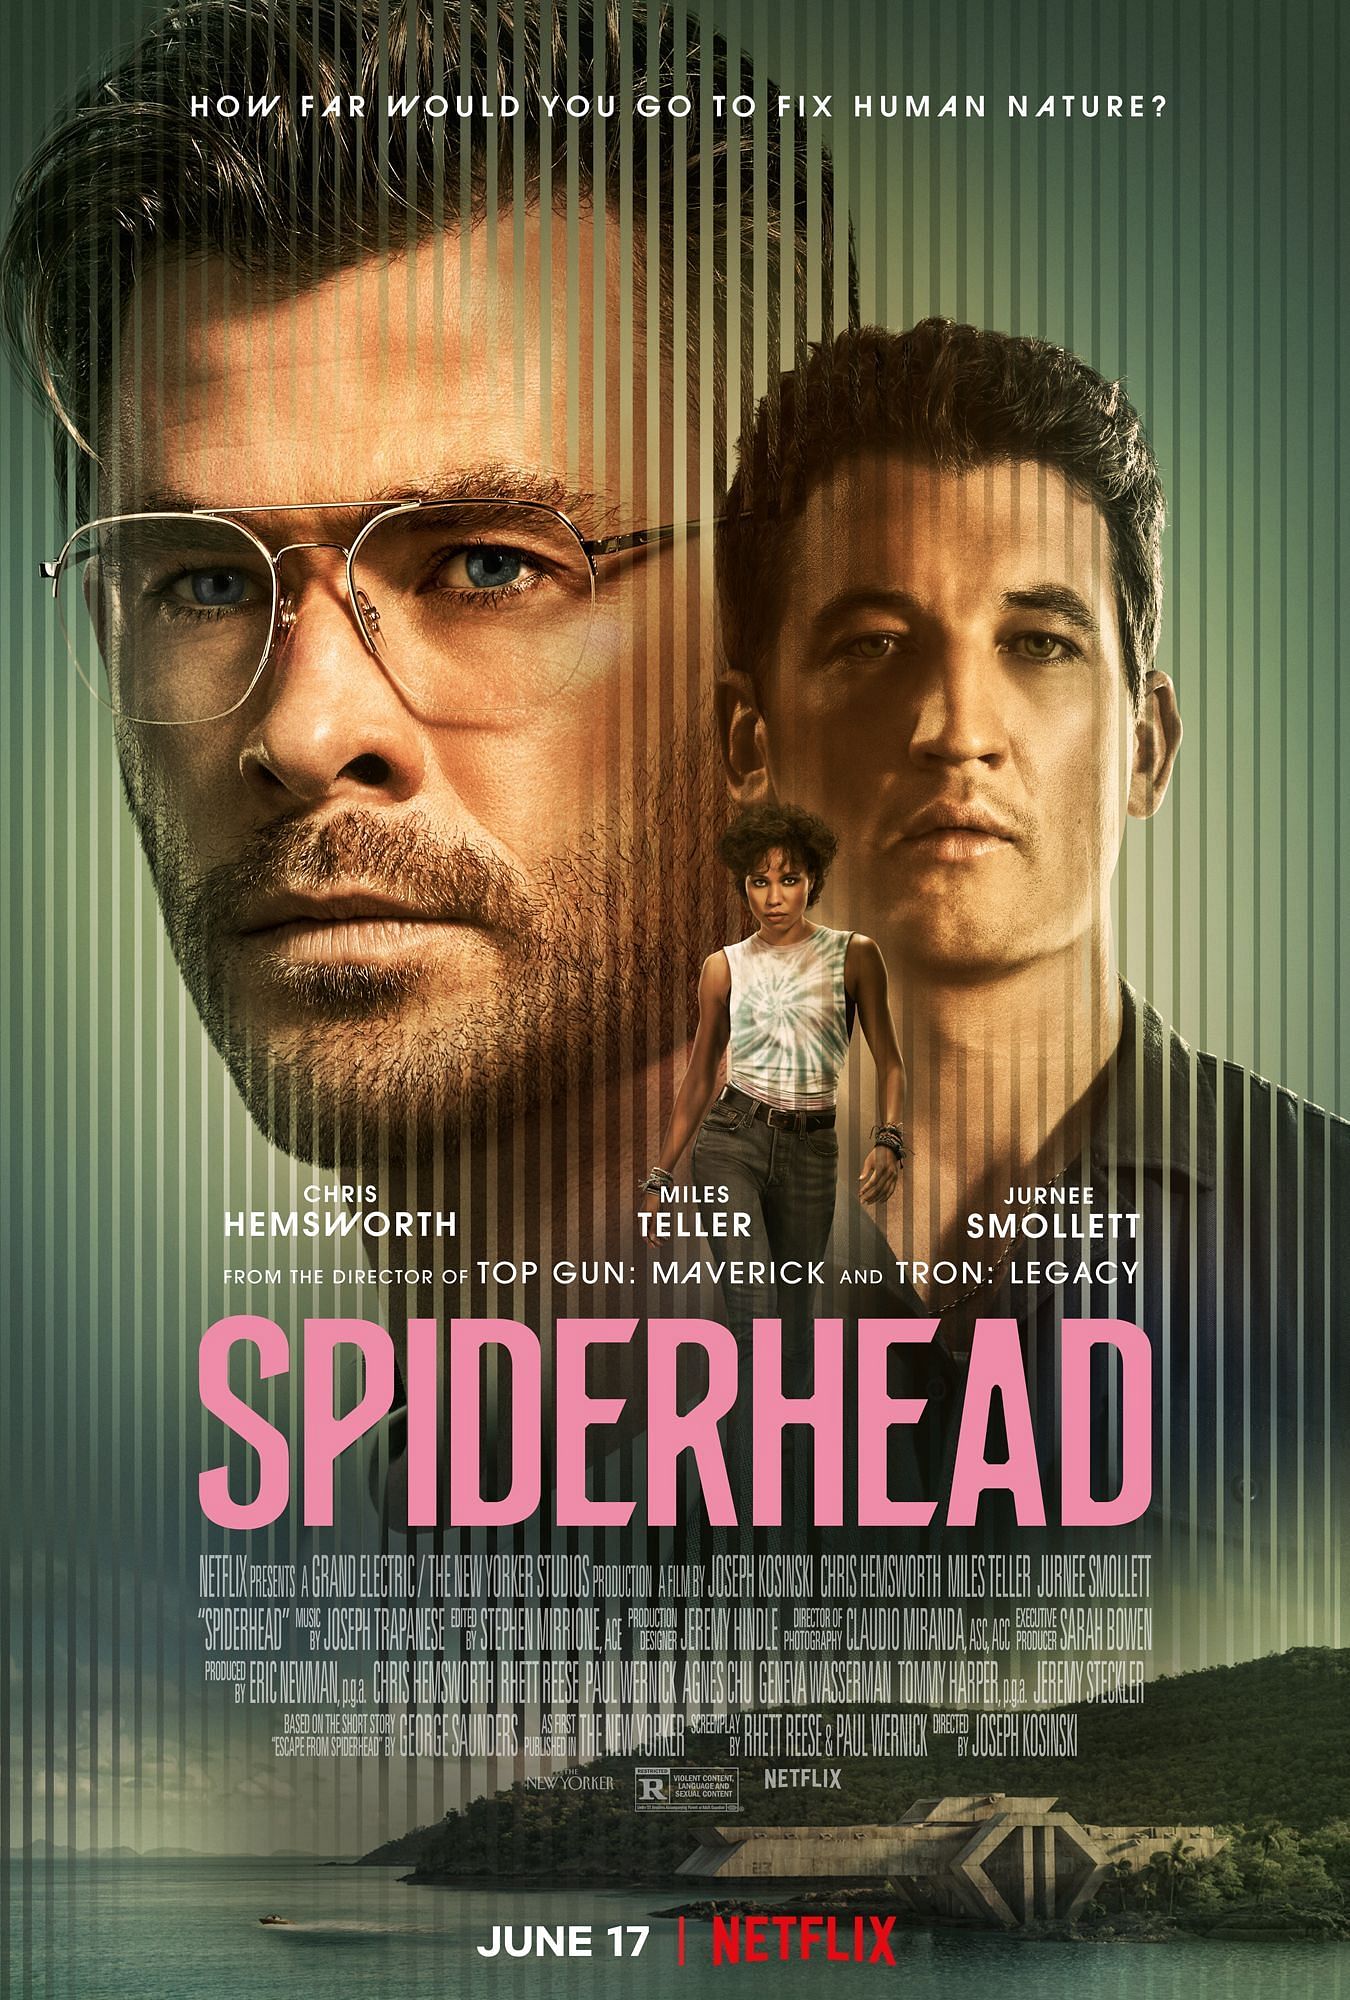 Spiderhead, 2022 (Image via Netflix)